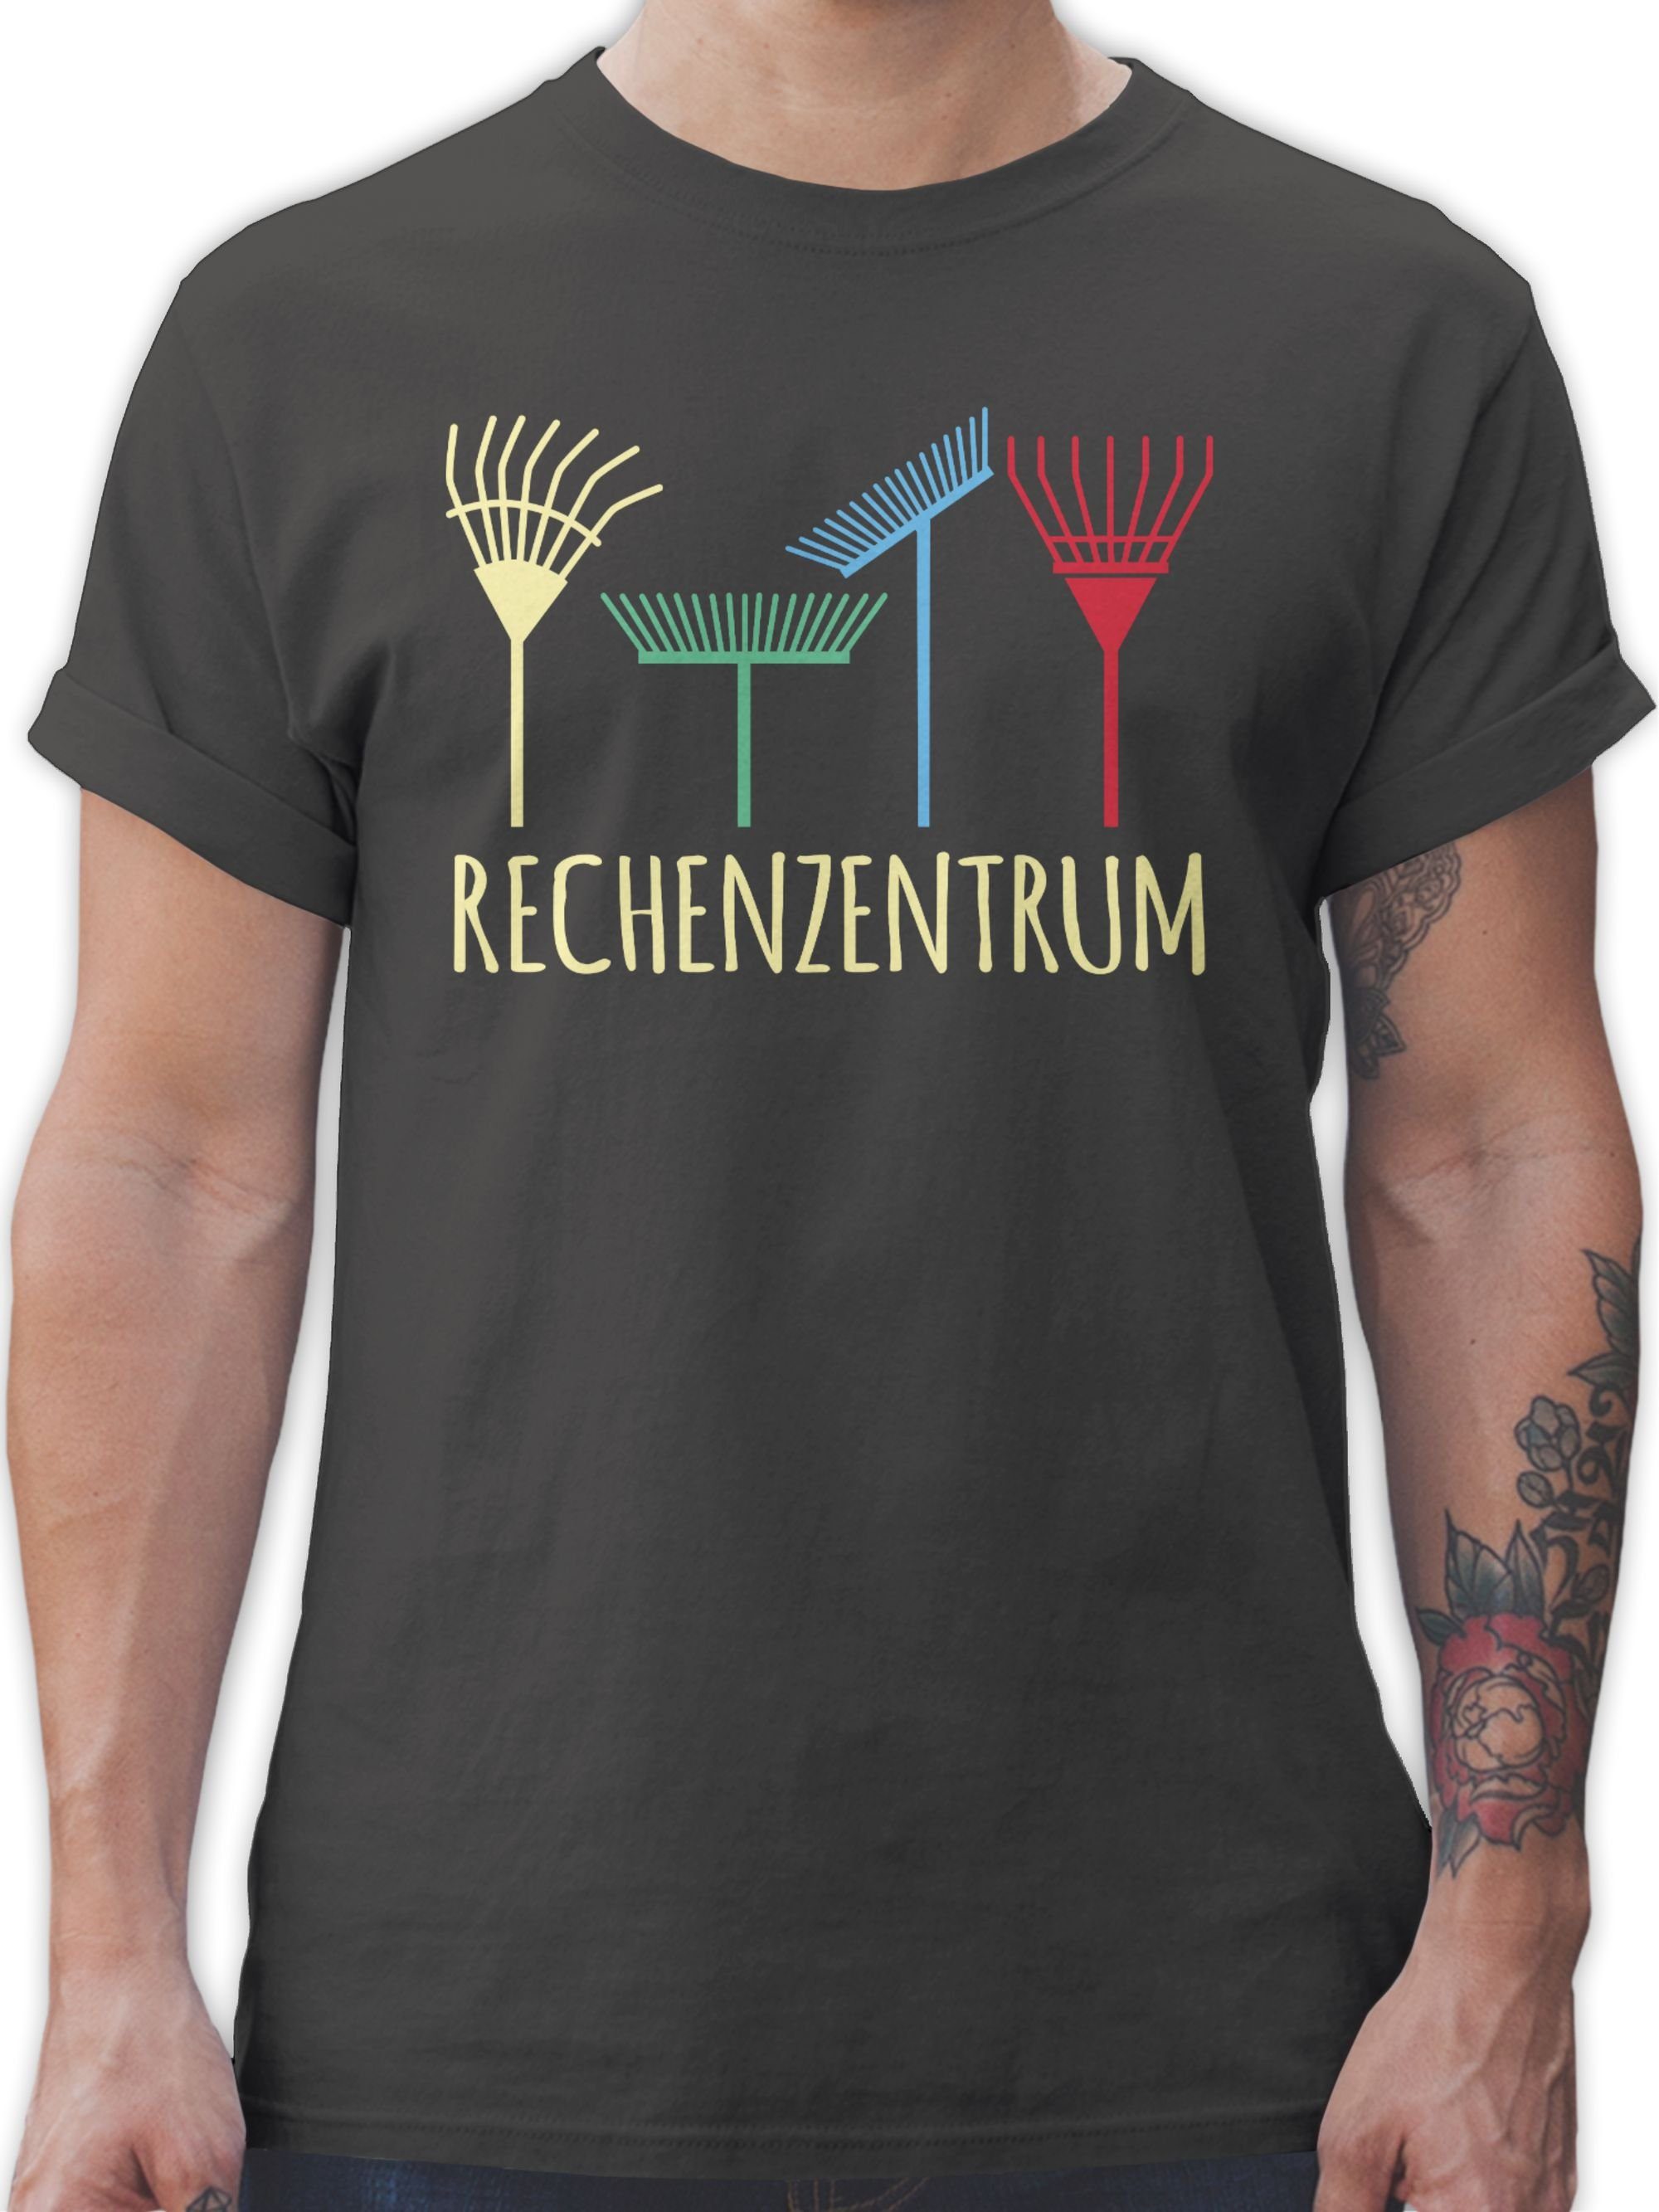 Rechenzentrum Gärtner Gartenarbeit Hobby 02 Geschenk Shirtracer Dunkelgrau Outfit - Geschenkidee T-Shirt